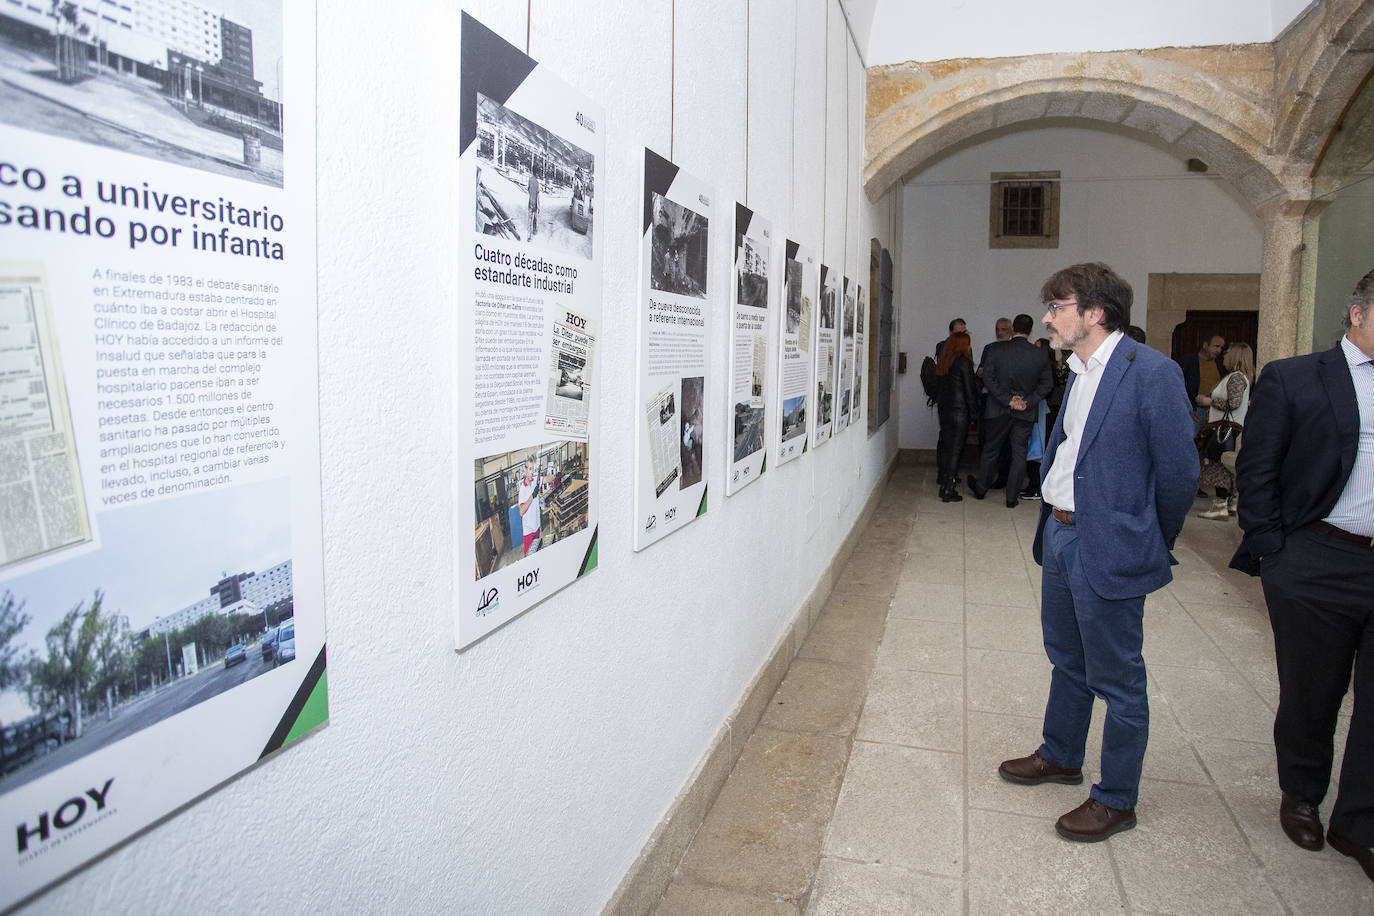 David Martín Arevalillo, delegado de Iberdrola en Extremadura, contemplando la exposición